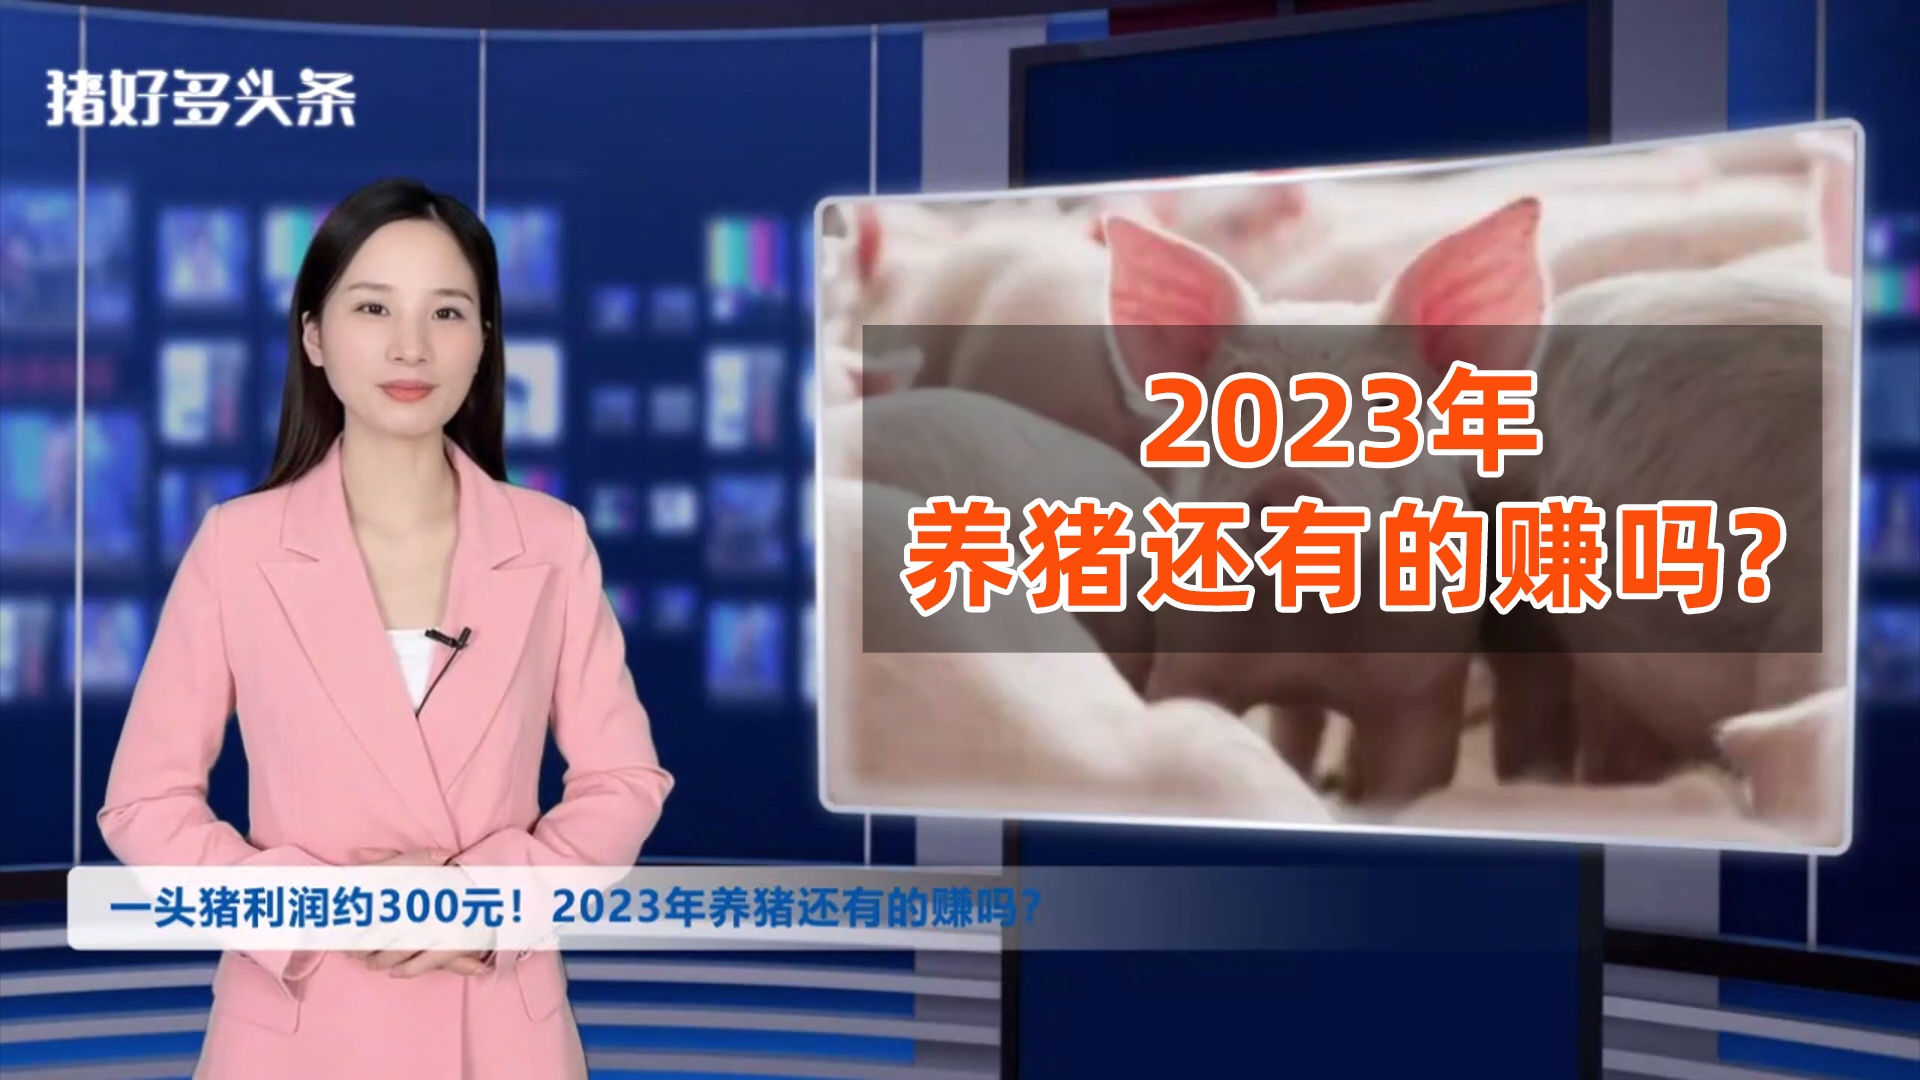 2022年一头猪利润约300元！2023年养猪还有的赚吗？预测来了！